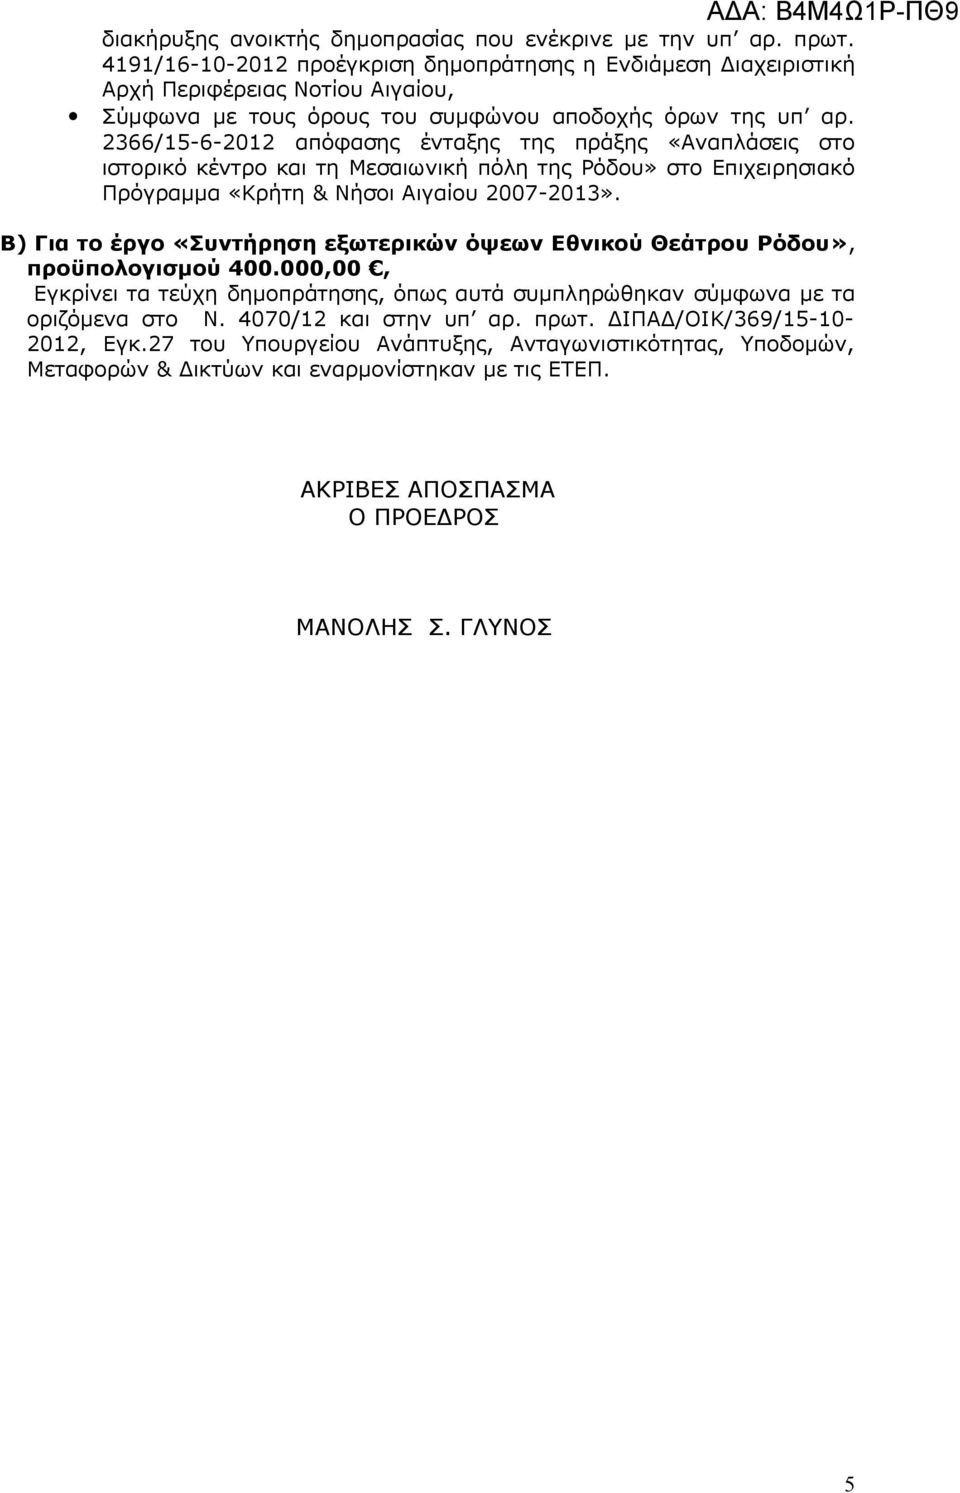 2366/15-6-2012 απόφασης ένταξης της πράξης «Αναπλάσεις στο ιστορικό κέντρο και τη Μεσαιωνική πόλη της Ρόδου» στο Επιχειρησιακό Πρόγραμμα «Κρήτη & Νήσοι Αιγαίου 2007-2013».